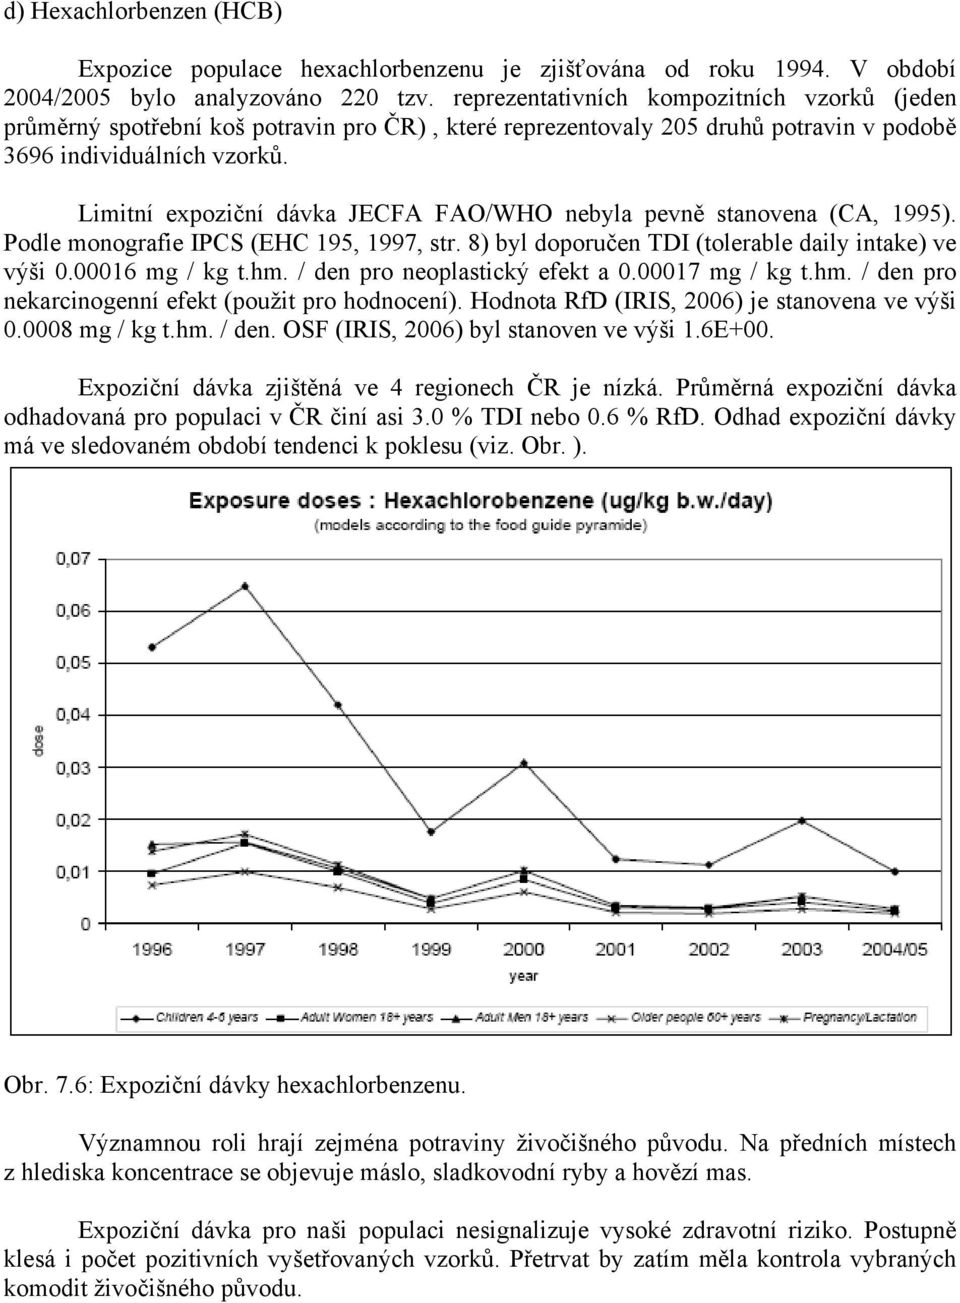 Limitní expoziční dávka JECFA FAO/WHO nebyla pevně stanovena (CA, 1995). Podle monografie IPCS (EHC 195, 1997, str. 8) byl doporučen TDI (tolerable daily intake) ve výši 0.00016 mg / kg t.hm.